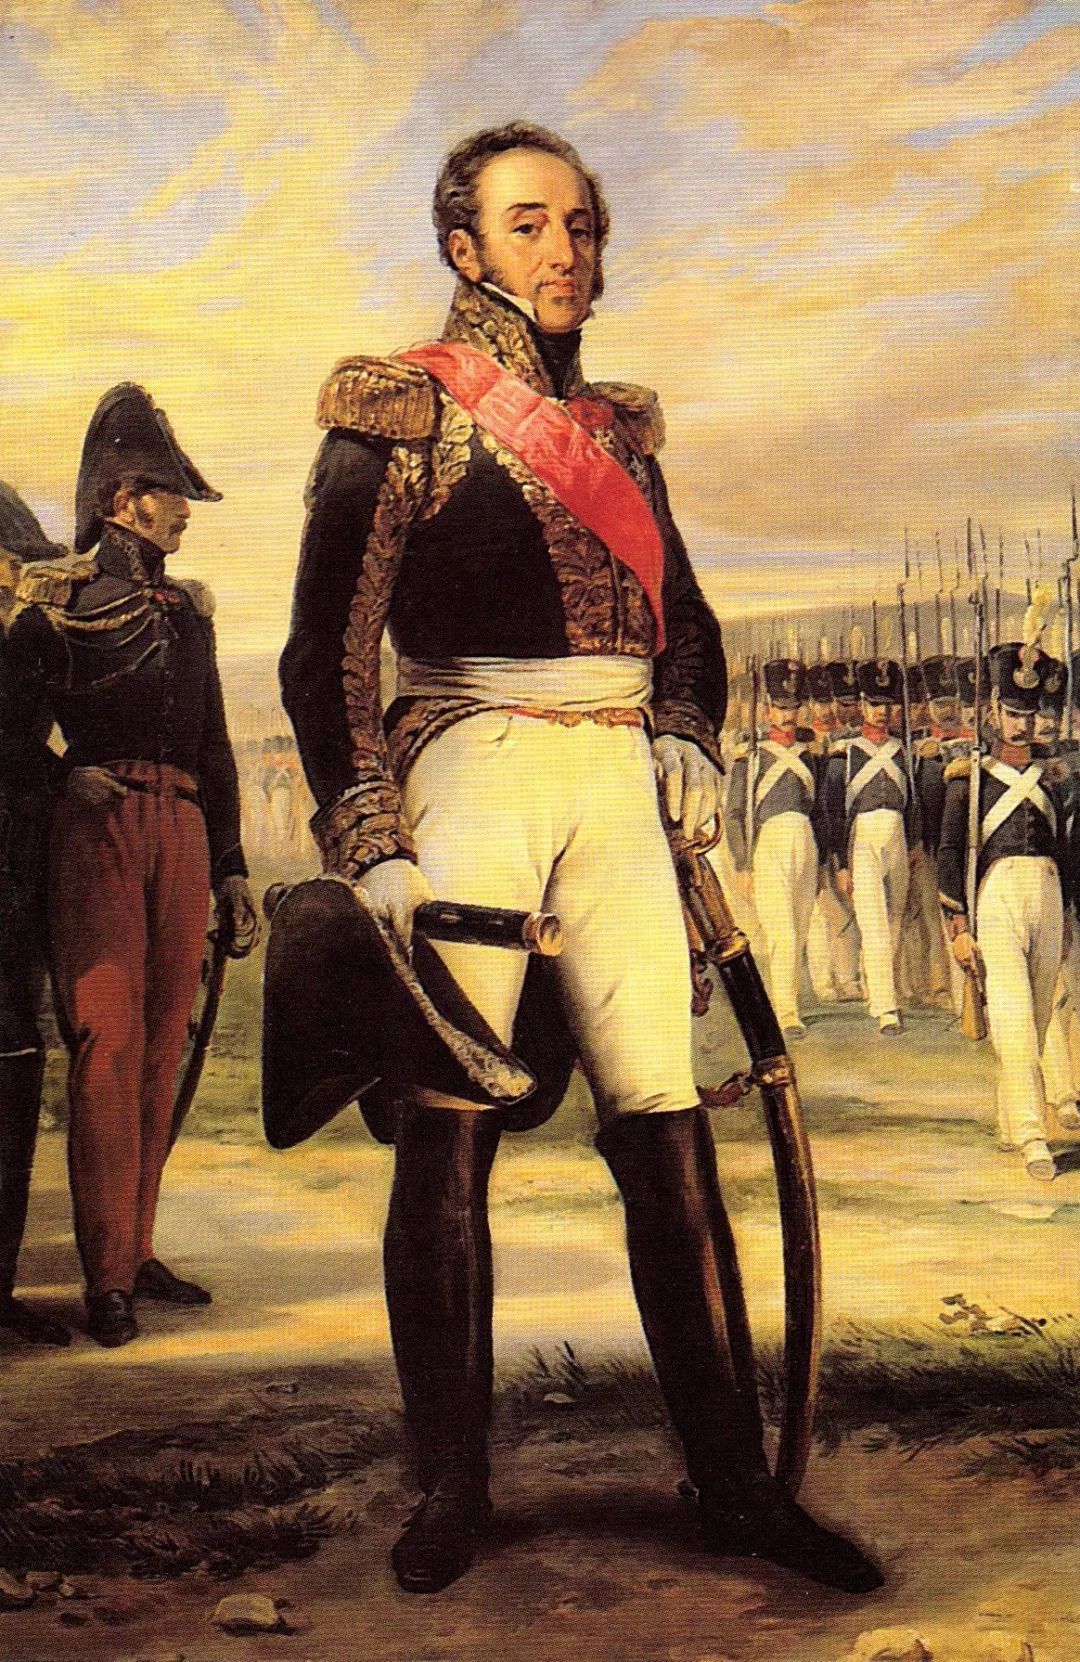 明明可以继承绸缎生意却非得从军:拿破仑最后一位元帅絮歇小传